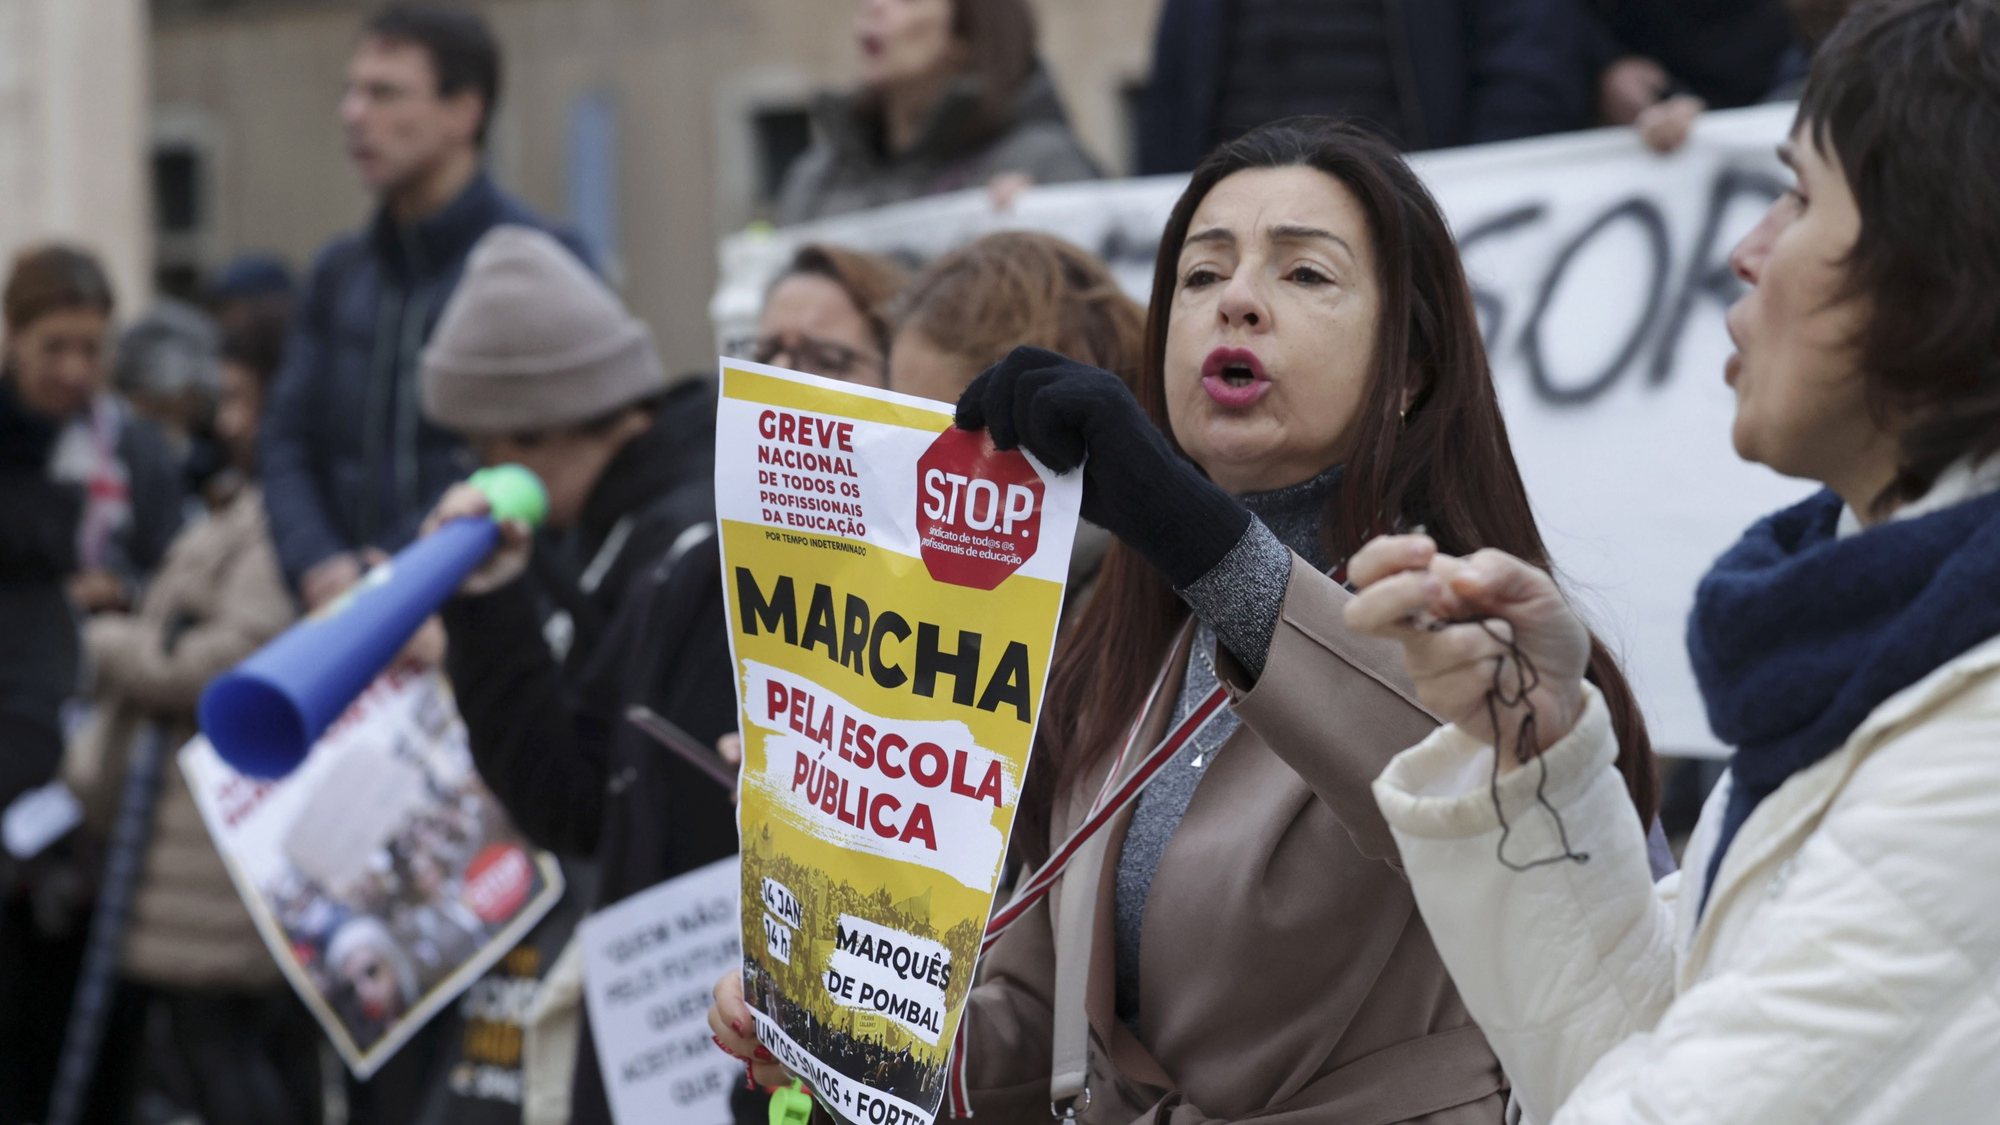 Protesto de professores em defesa da escola pública convocado pelo S.TO.P. - Sindicato de Todos os Profissionais da Educação junto à Câmara Municipal de Lisboa, 7 de janeiro de 2023.   MANUEL DE ALMEIDA/LUSA